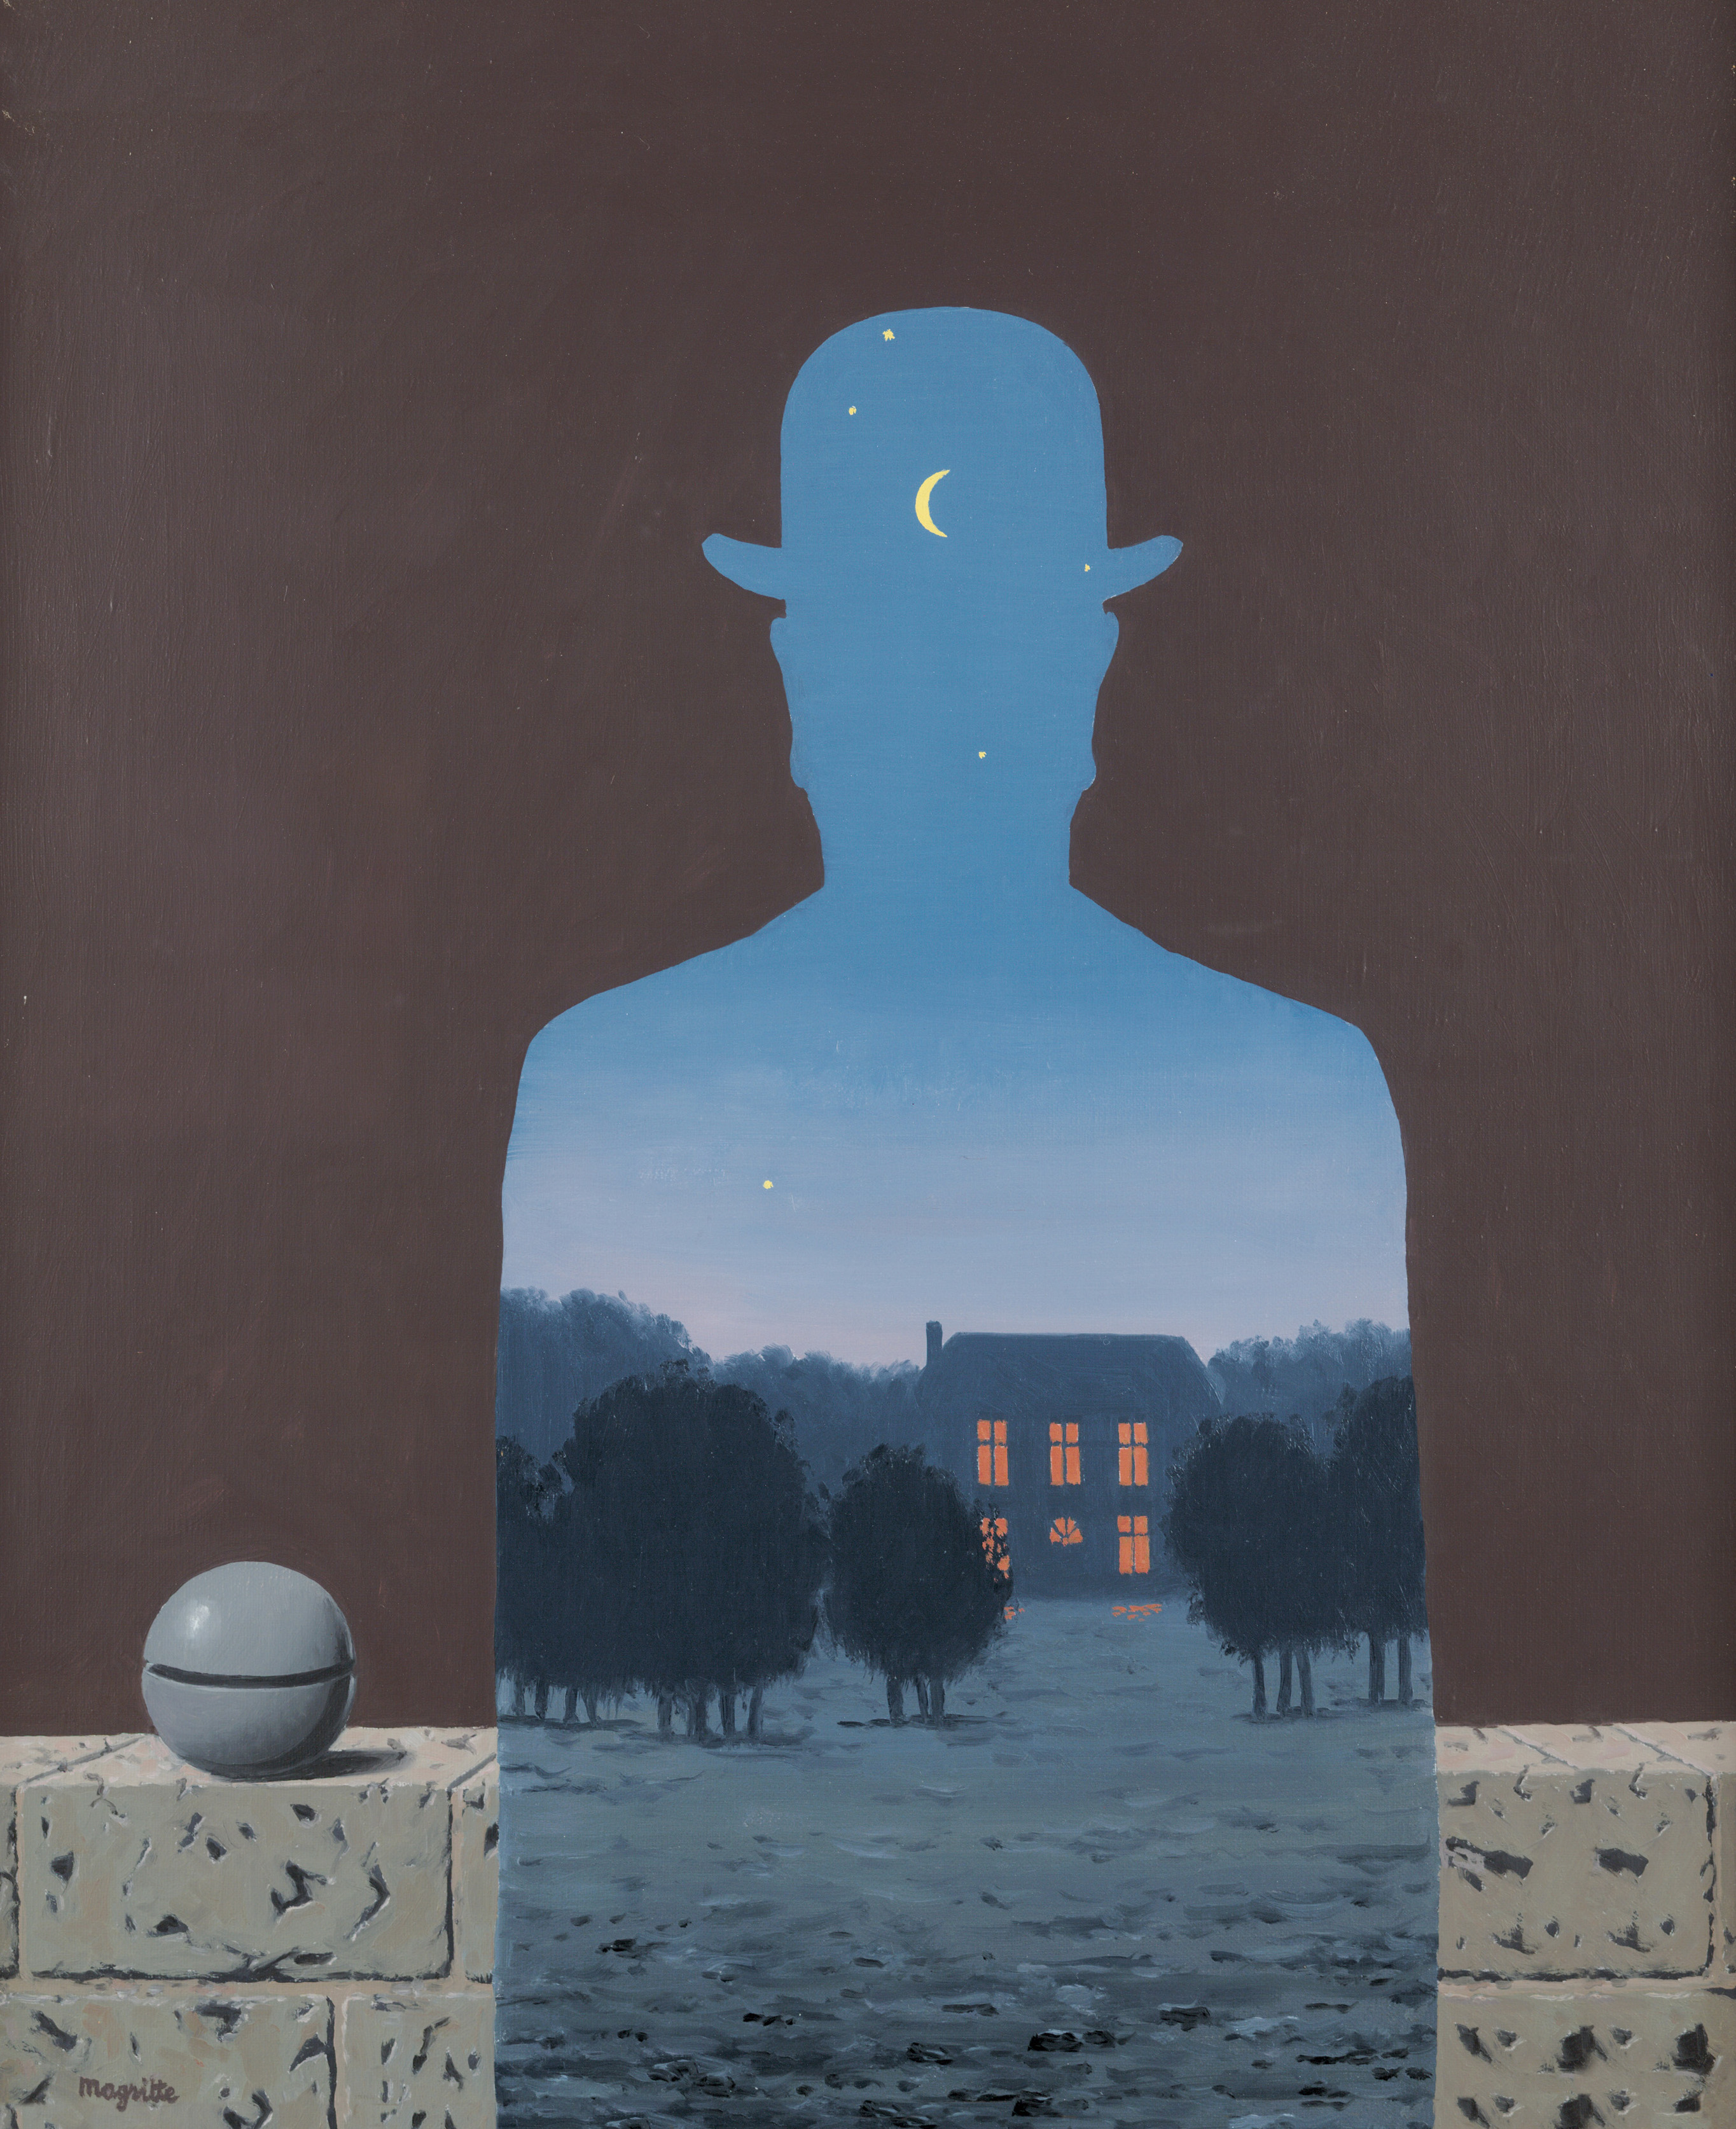 René Magritte, L'Heureux donateur, 1966, Öl auf Leinwand, 55,5 x 45,5 cm, Musée d'Ixelles-Brussels, Photo: Mixed Media © VG Bild-Kunst, Bonn 2017